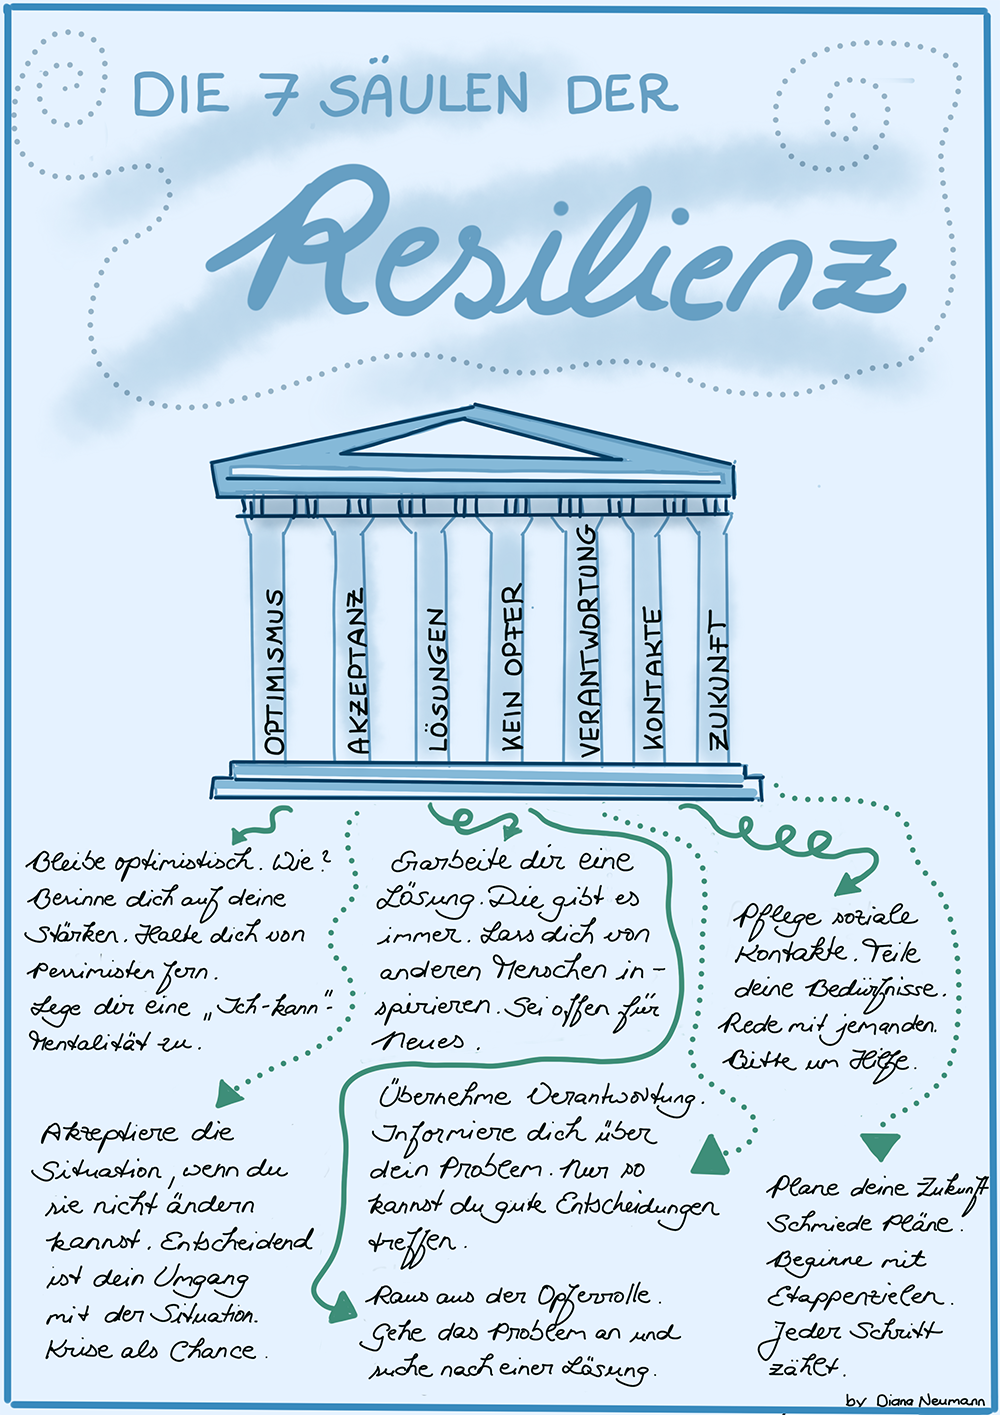 Die 7 Säulen der Resilienz von Diana Neumann.